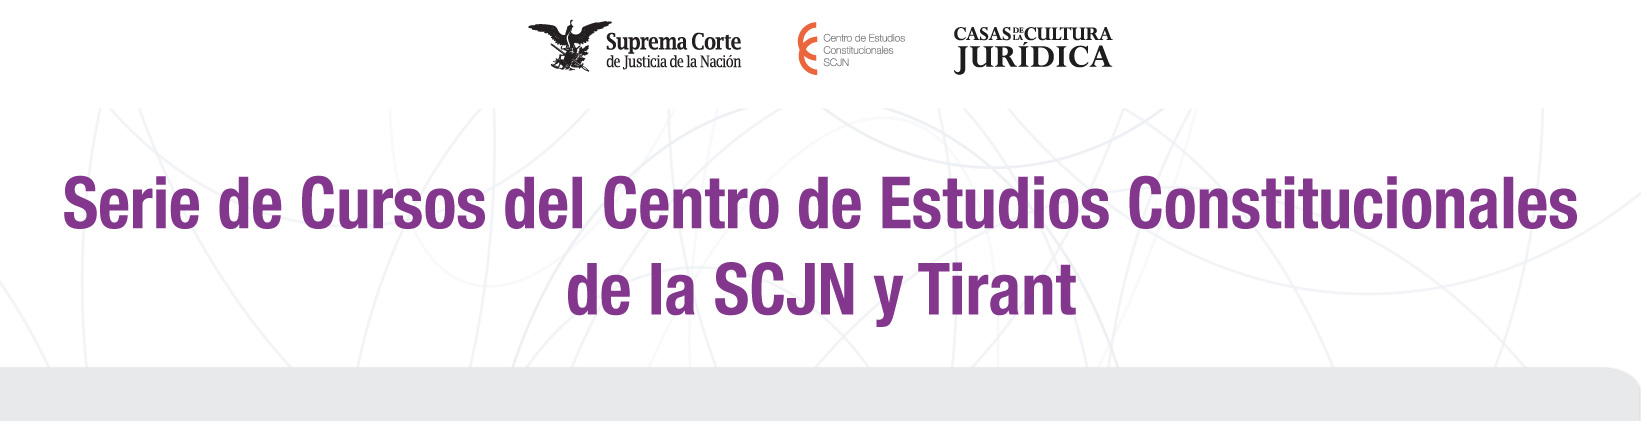 Banner de la Serie de Cursos del Centro de Estudios Constitucionales de la SCJN y Tirant 